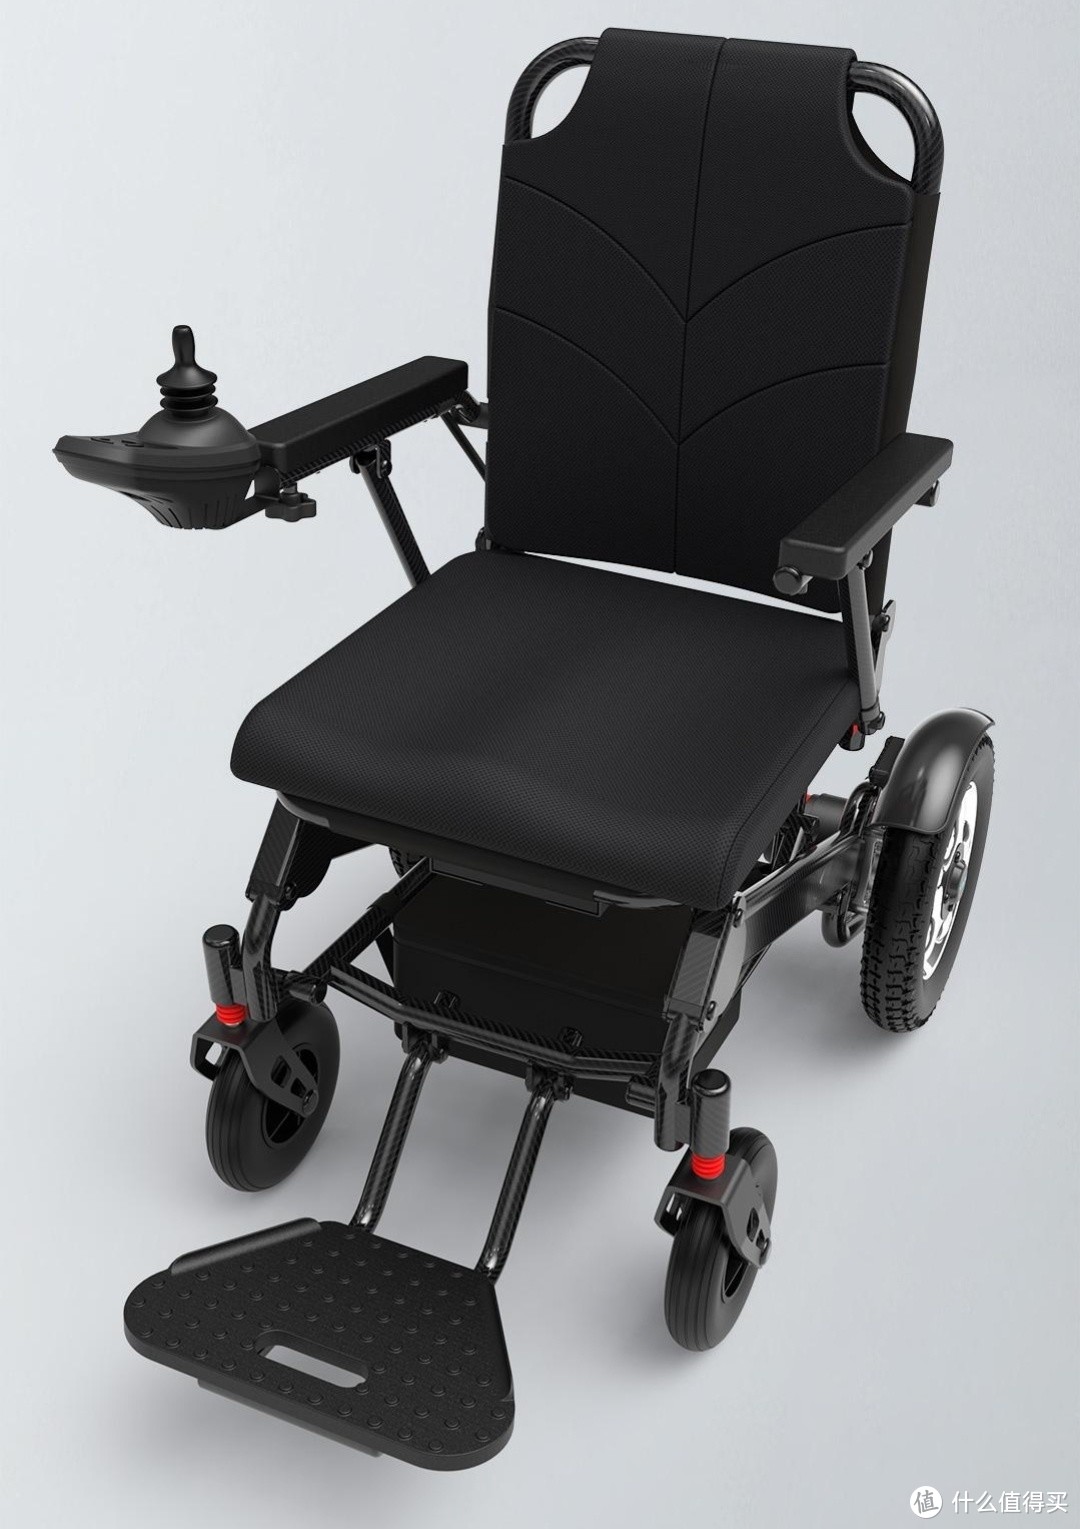 生活好优惠 篇222:小米有品 众筹价2399元 ,映寿汇 智能电动轮椅,上路